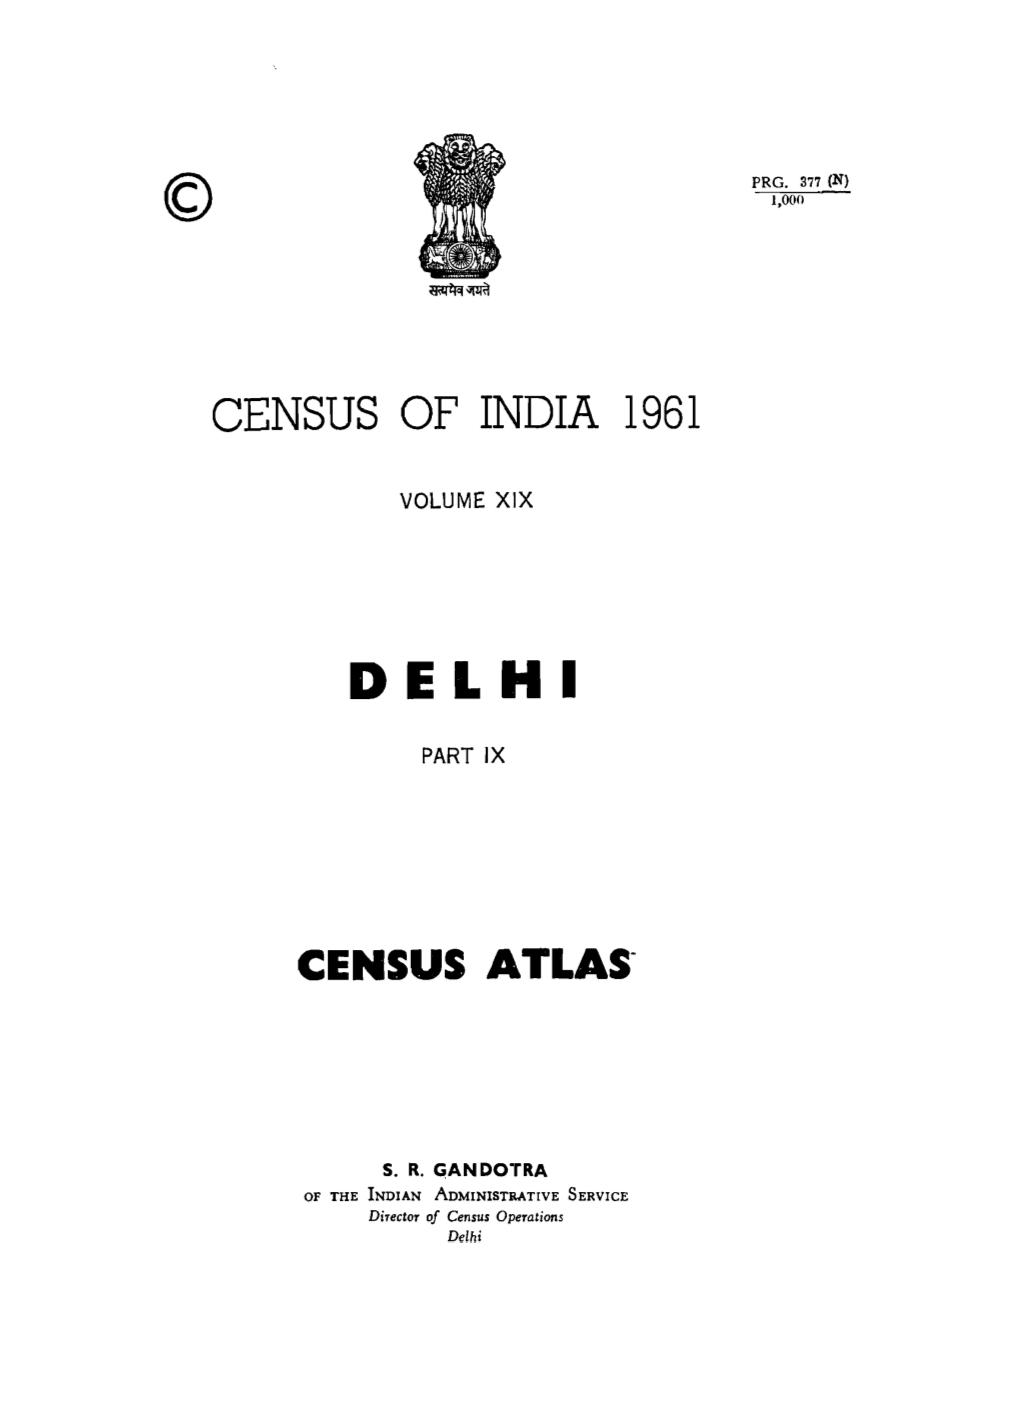 Census Atlas, Part IX, Vol-XIX, Delhi